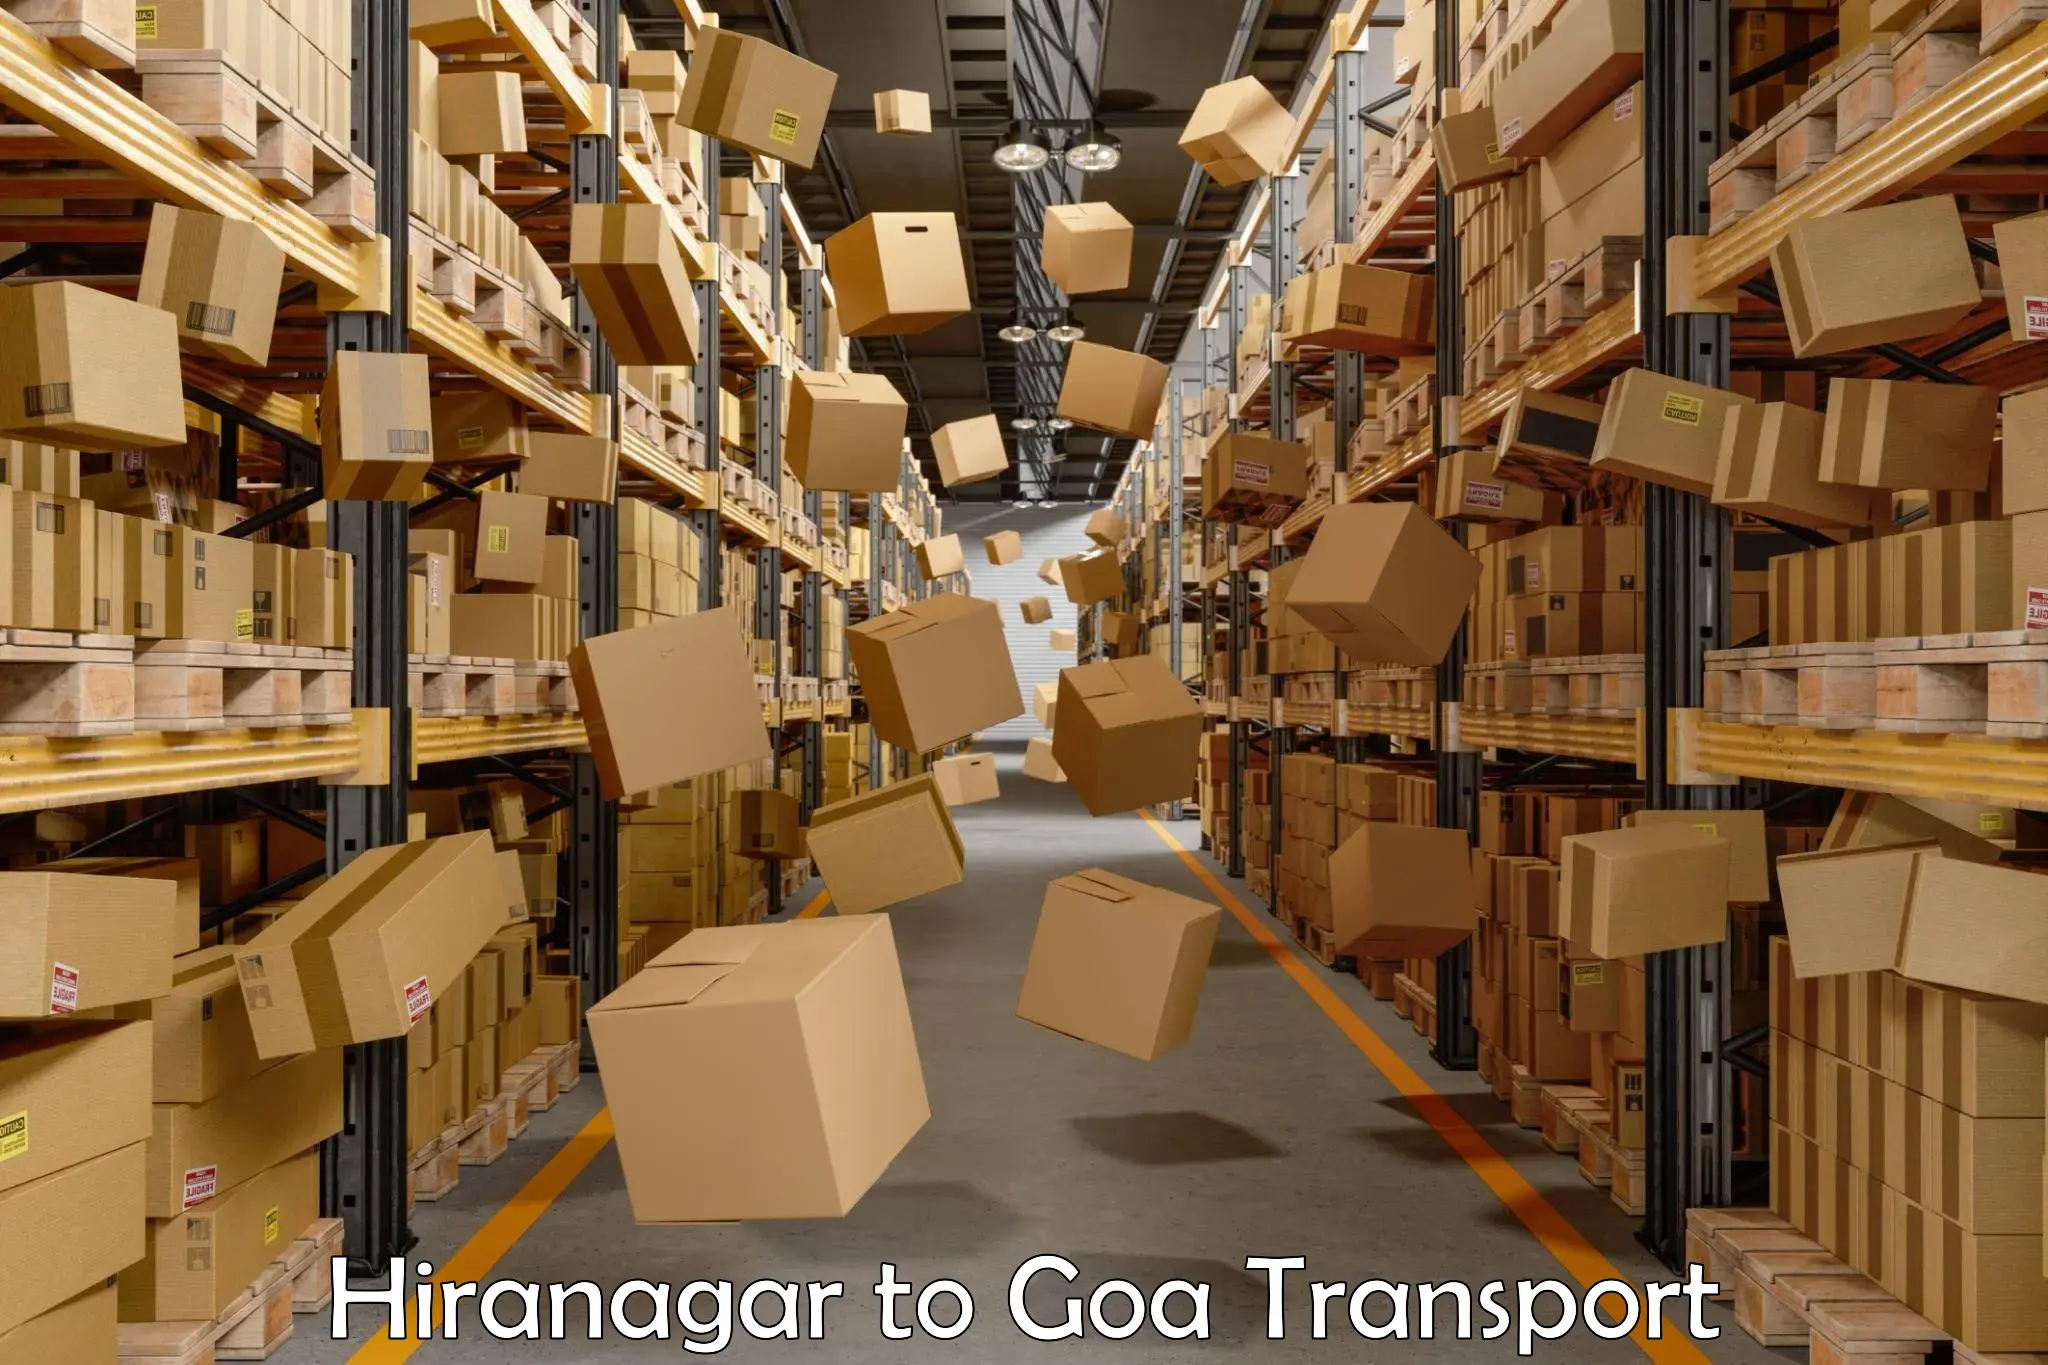 Delivery service Hiranagar to Goa